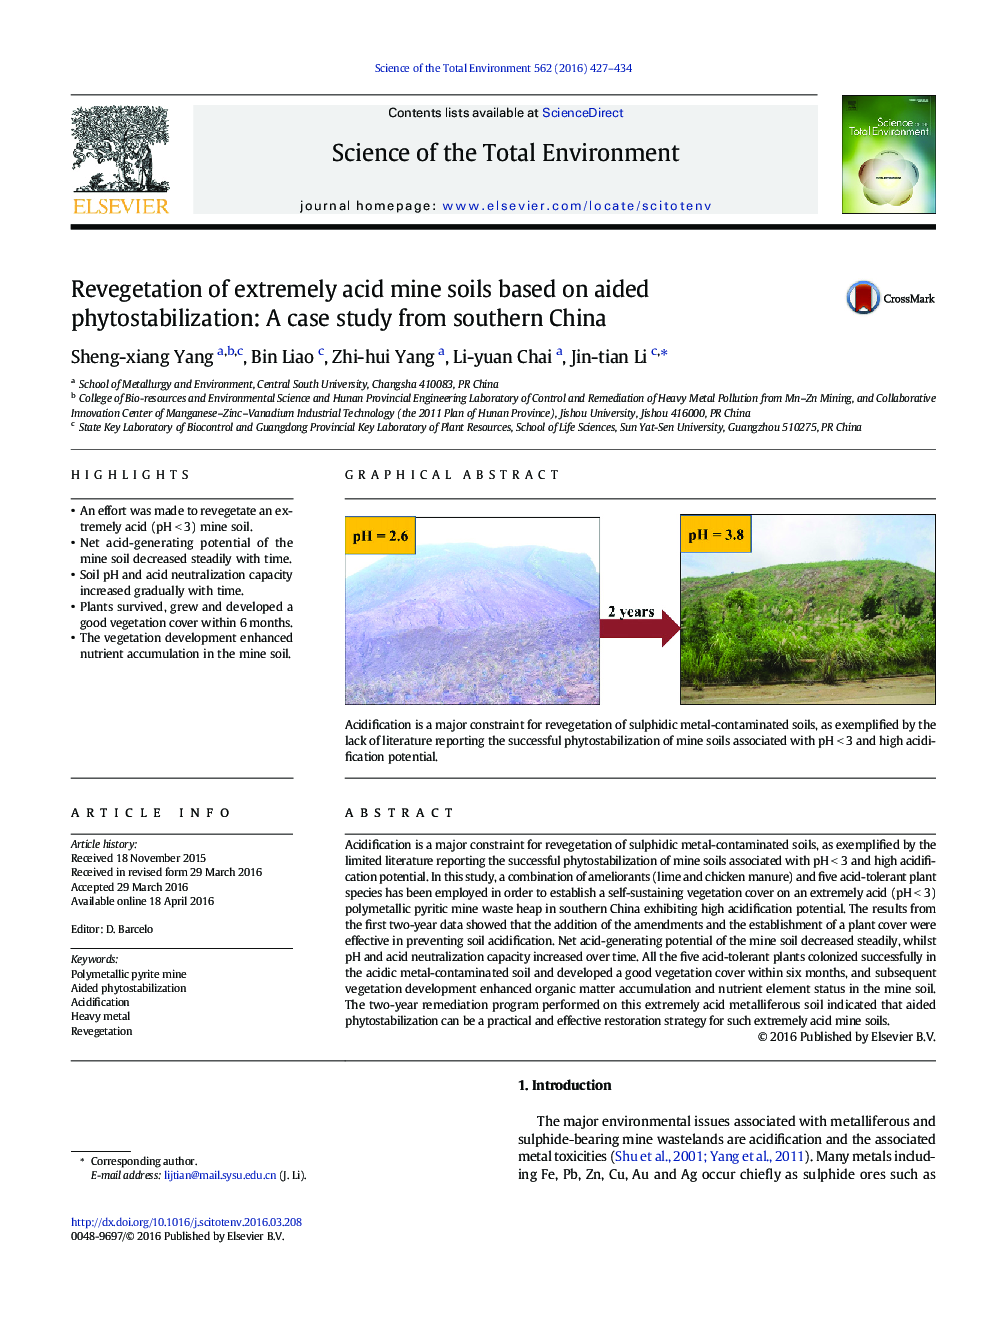 احیای خاک های بسیار اسید معدنی بر پایه کمک به پاکسازی گیاهان: مطالعه موردی از جنوب چین 